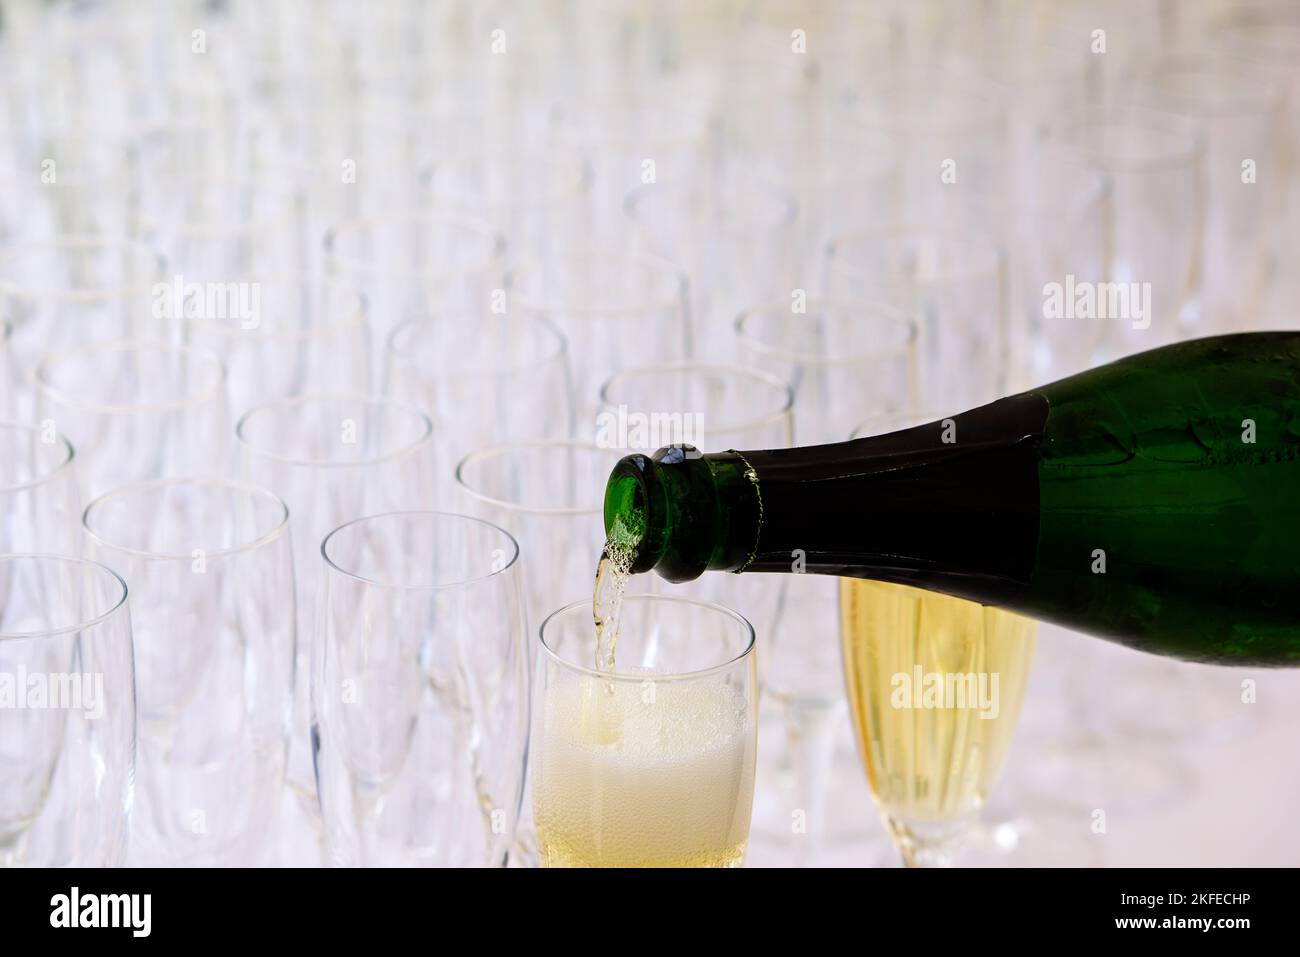 gros plan d'une bouteille de champagne pooring du champagne dans une flûte de champagne contre des verres flous en arrière-plan Banque D'Images